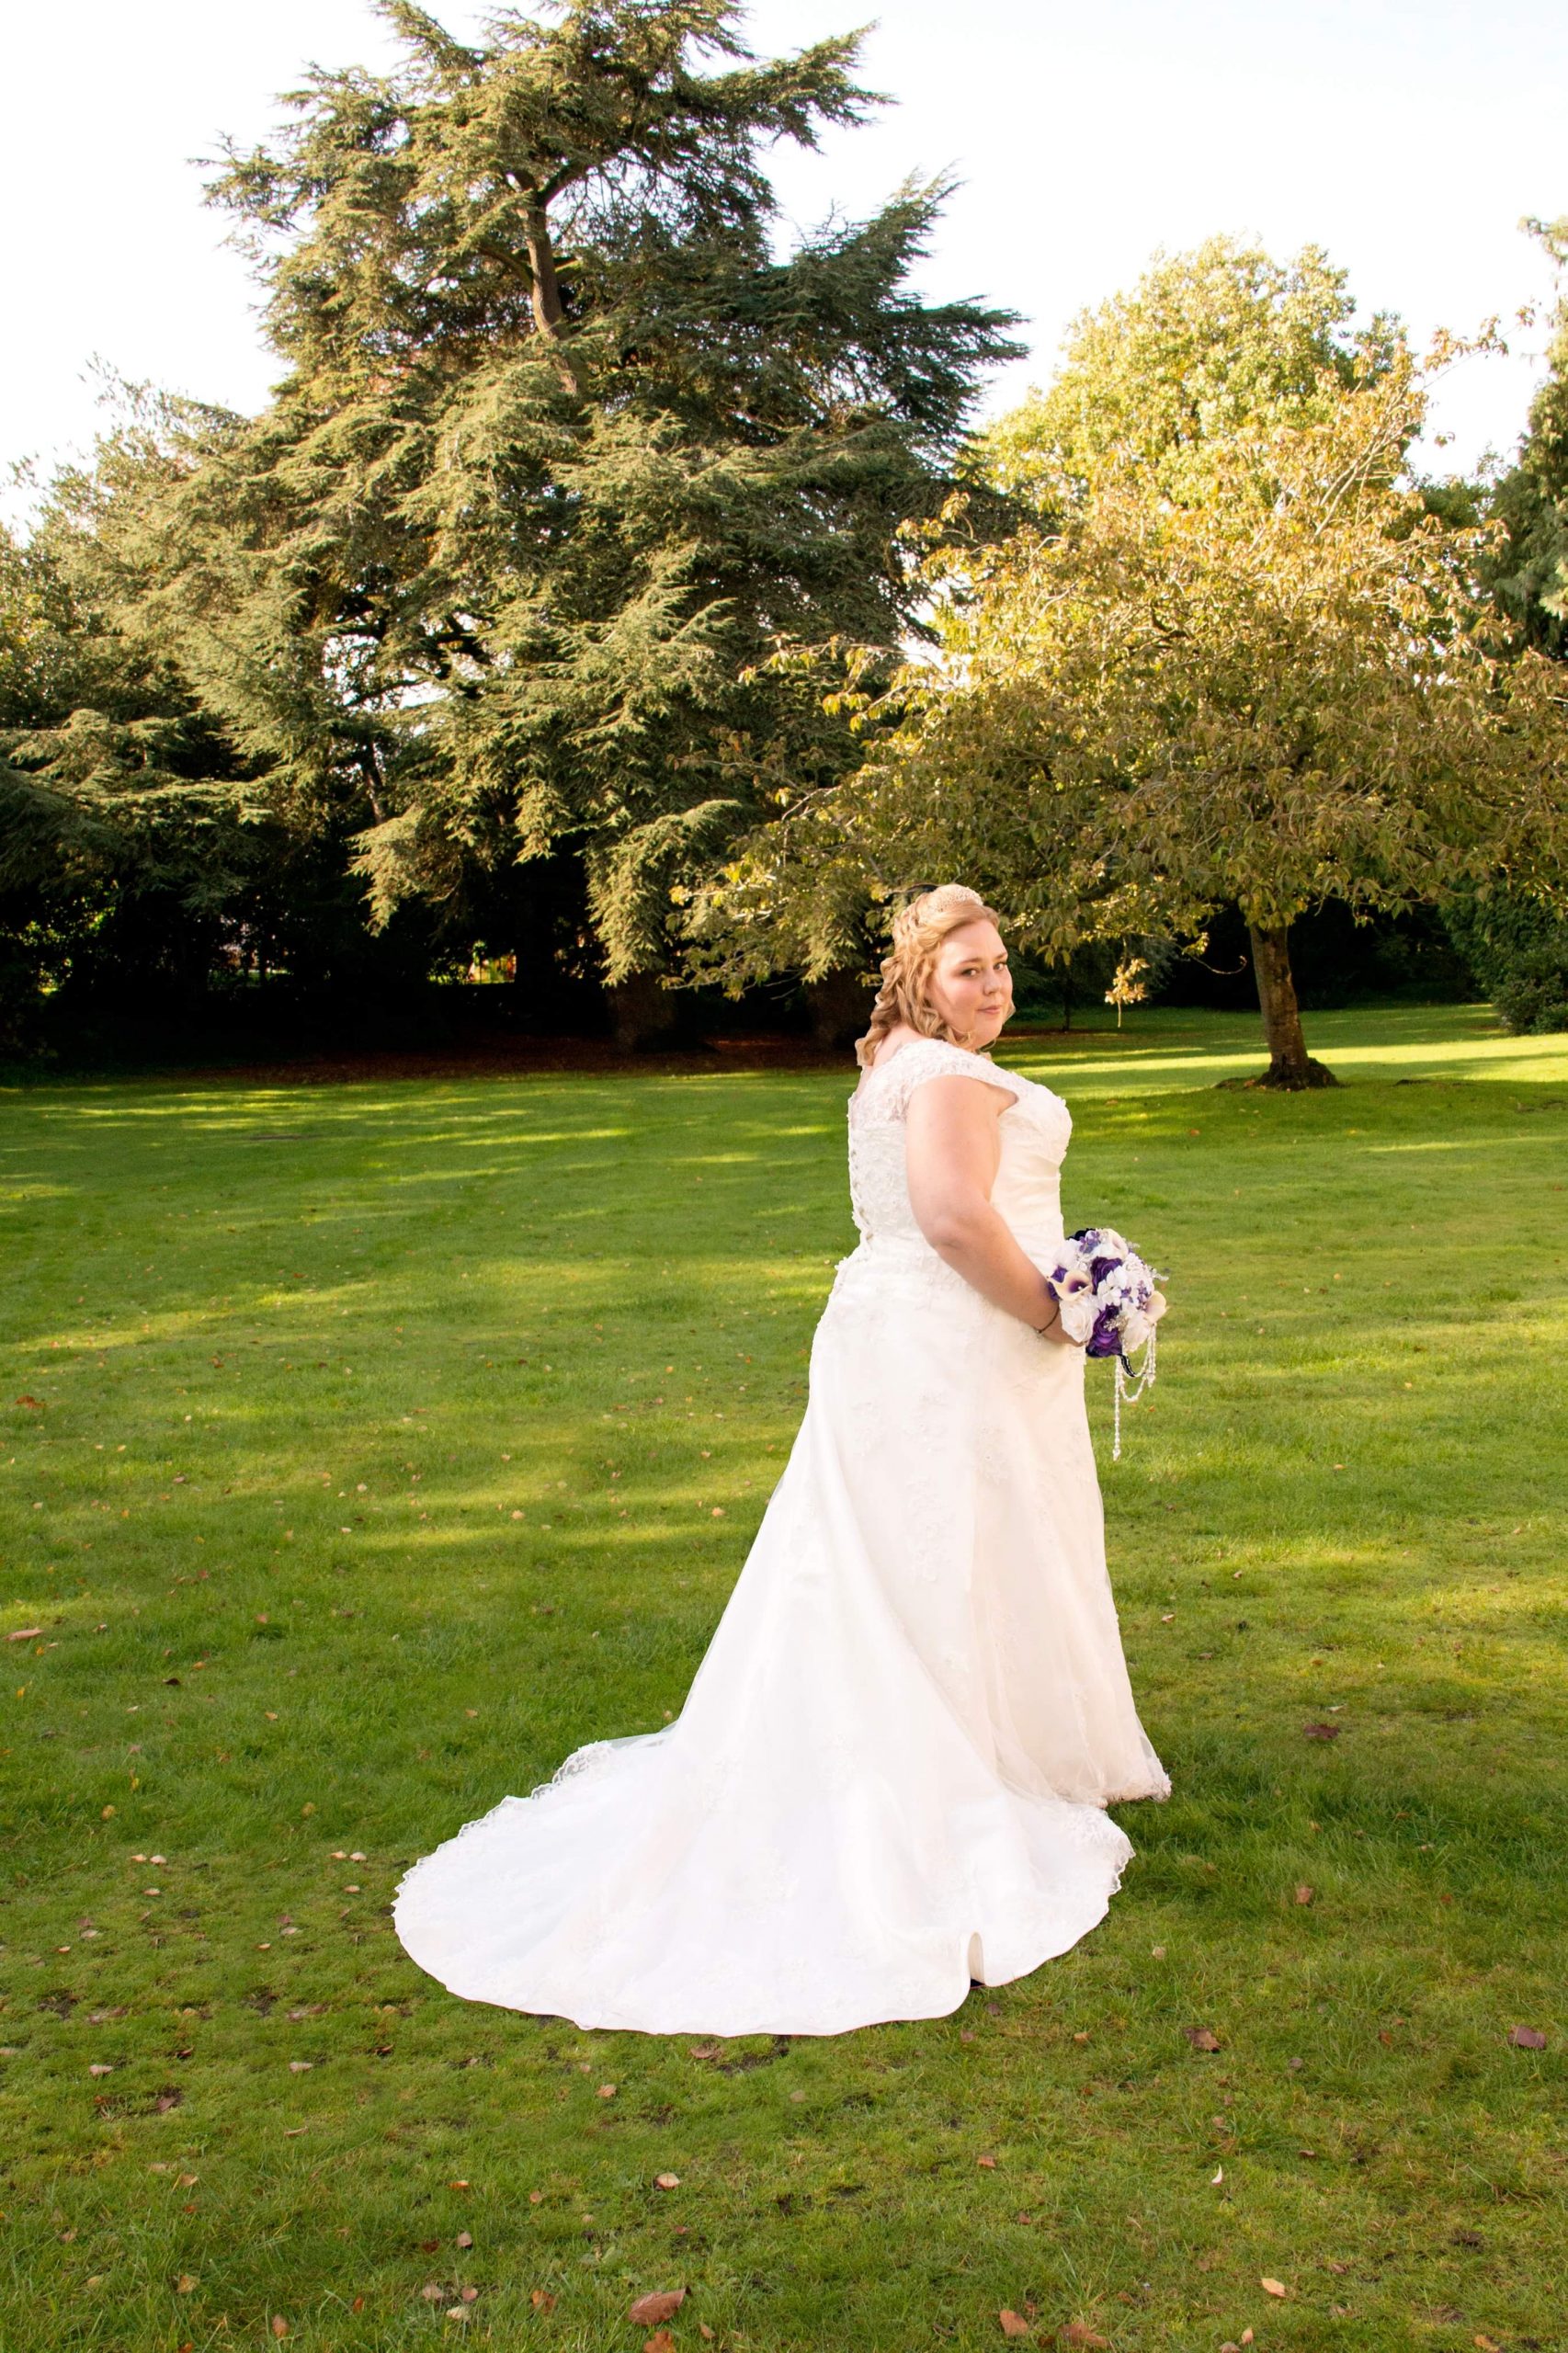 Stephanie Paine in her wedding dress